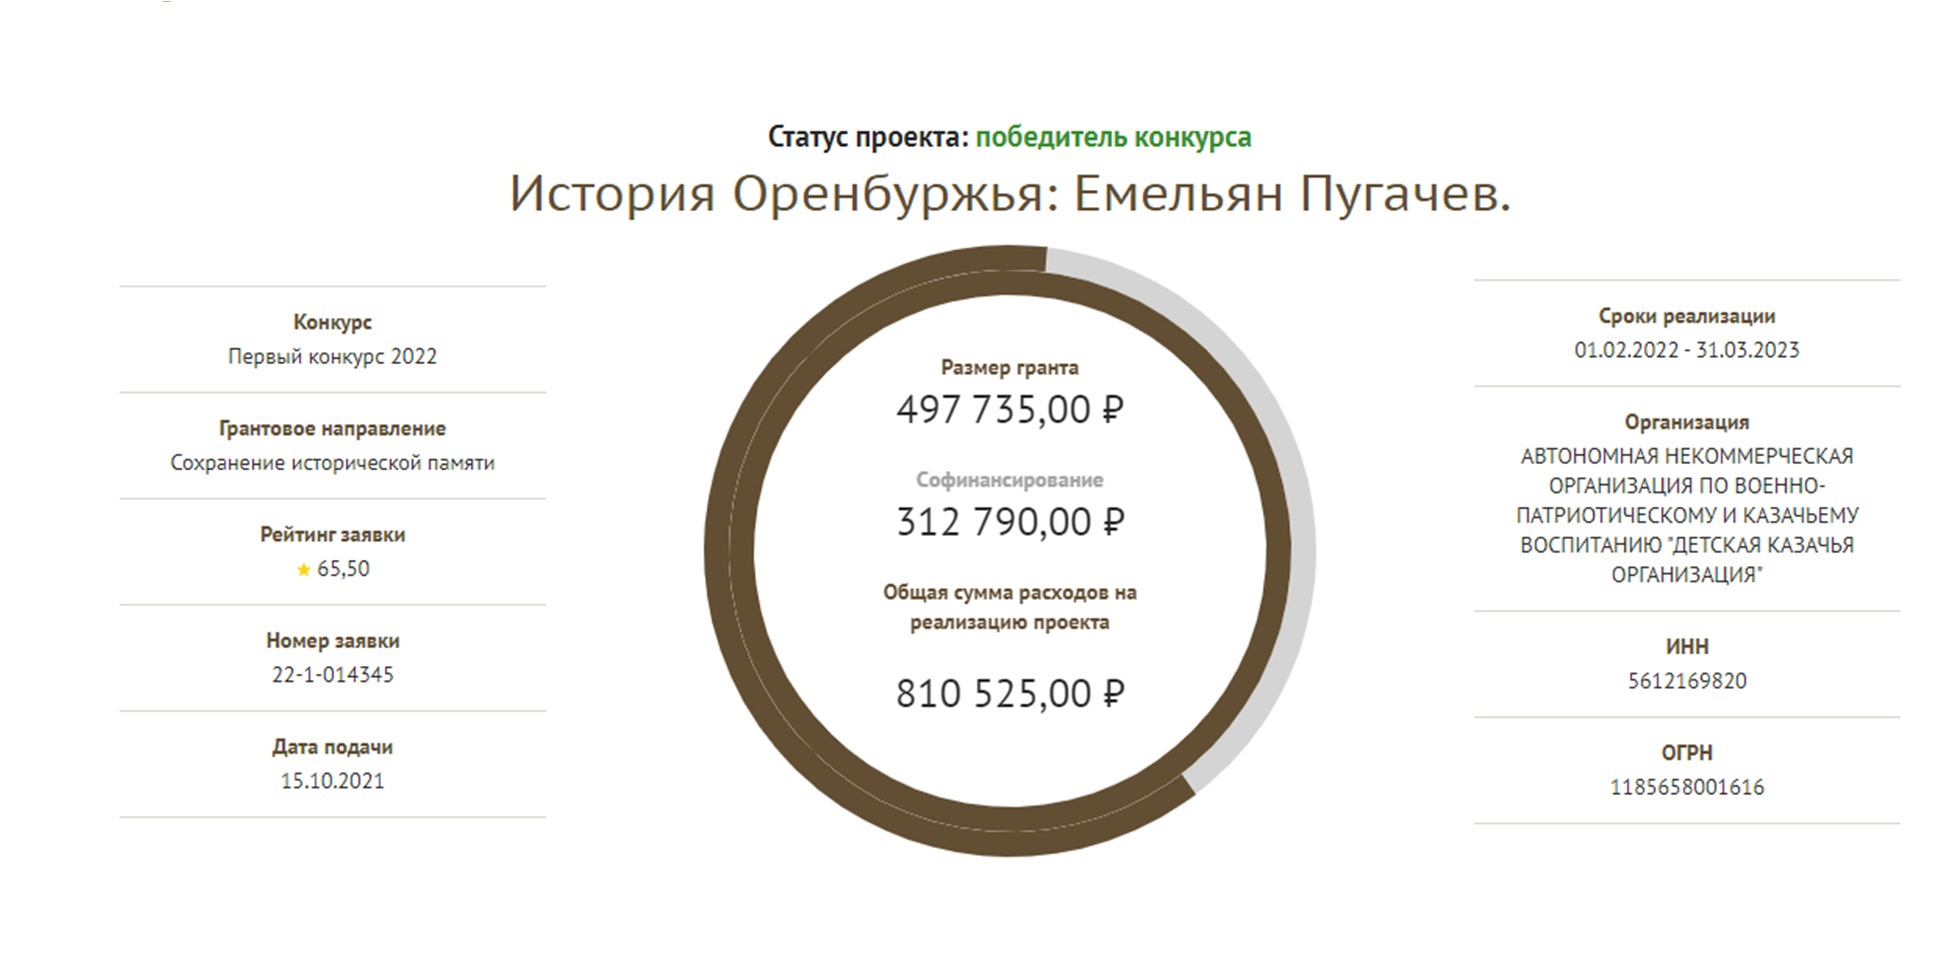 Детская казачья организация Оренбургской области победила в конкурсе фонда президентских грантов